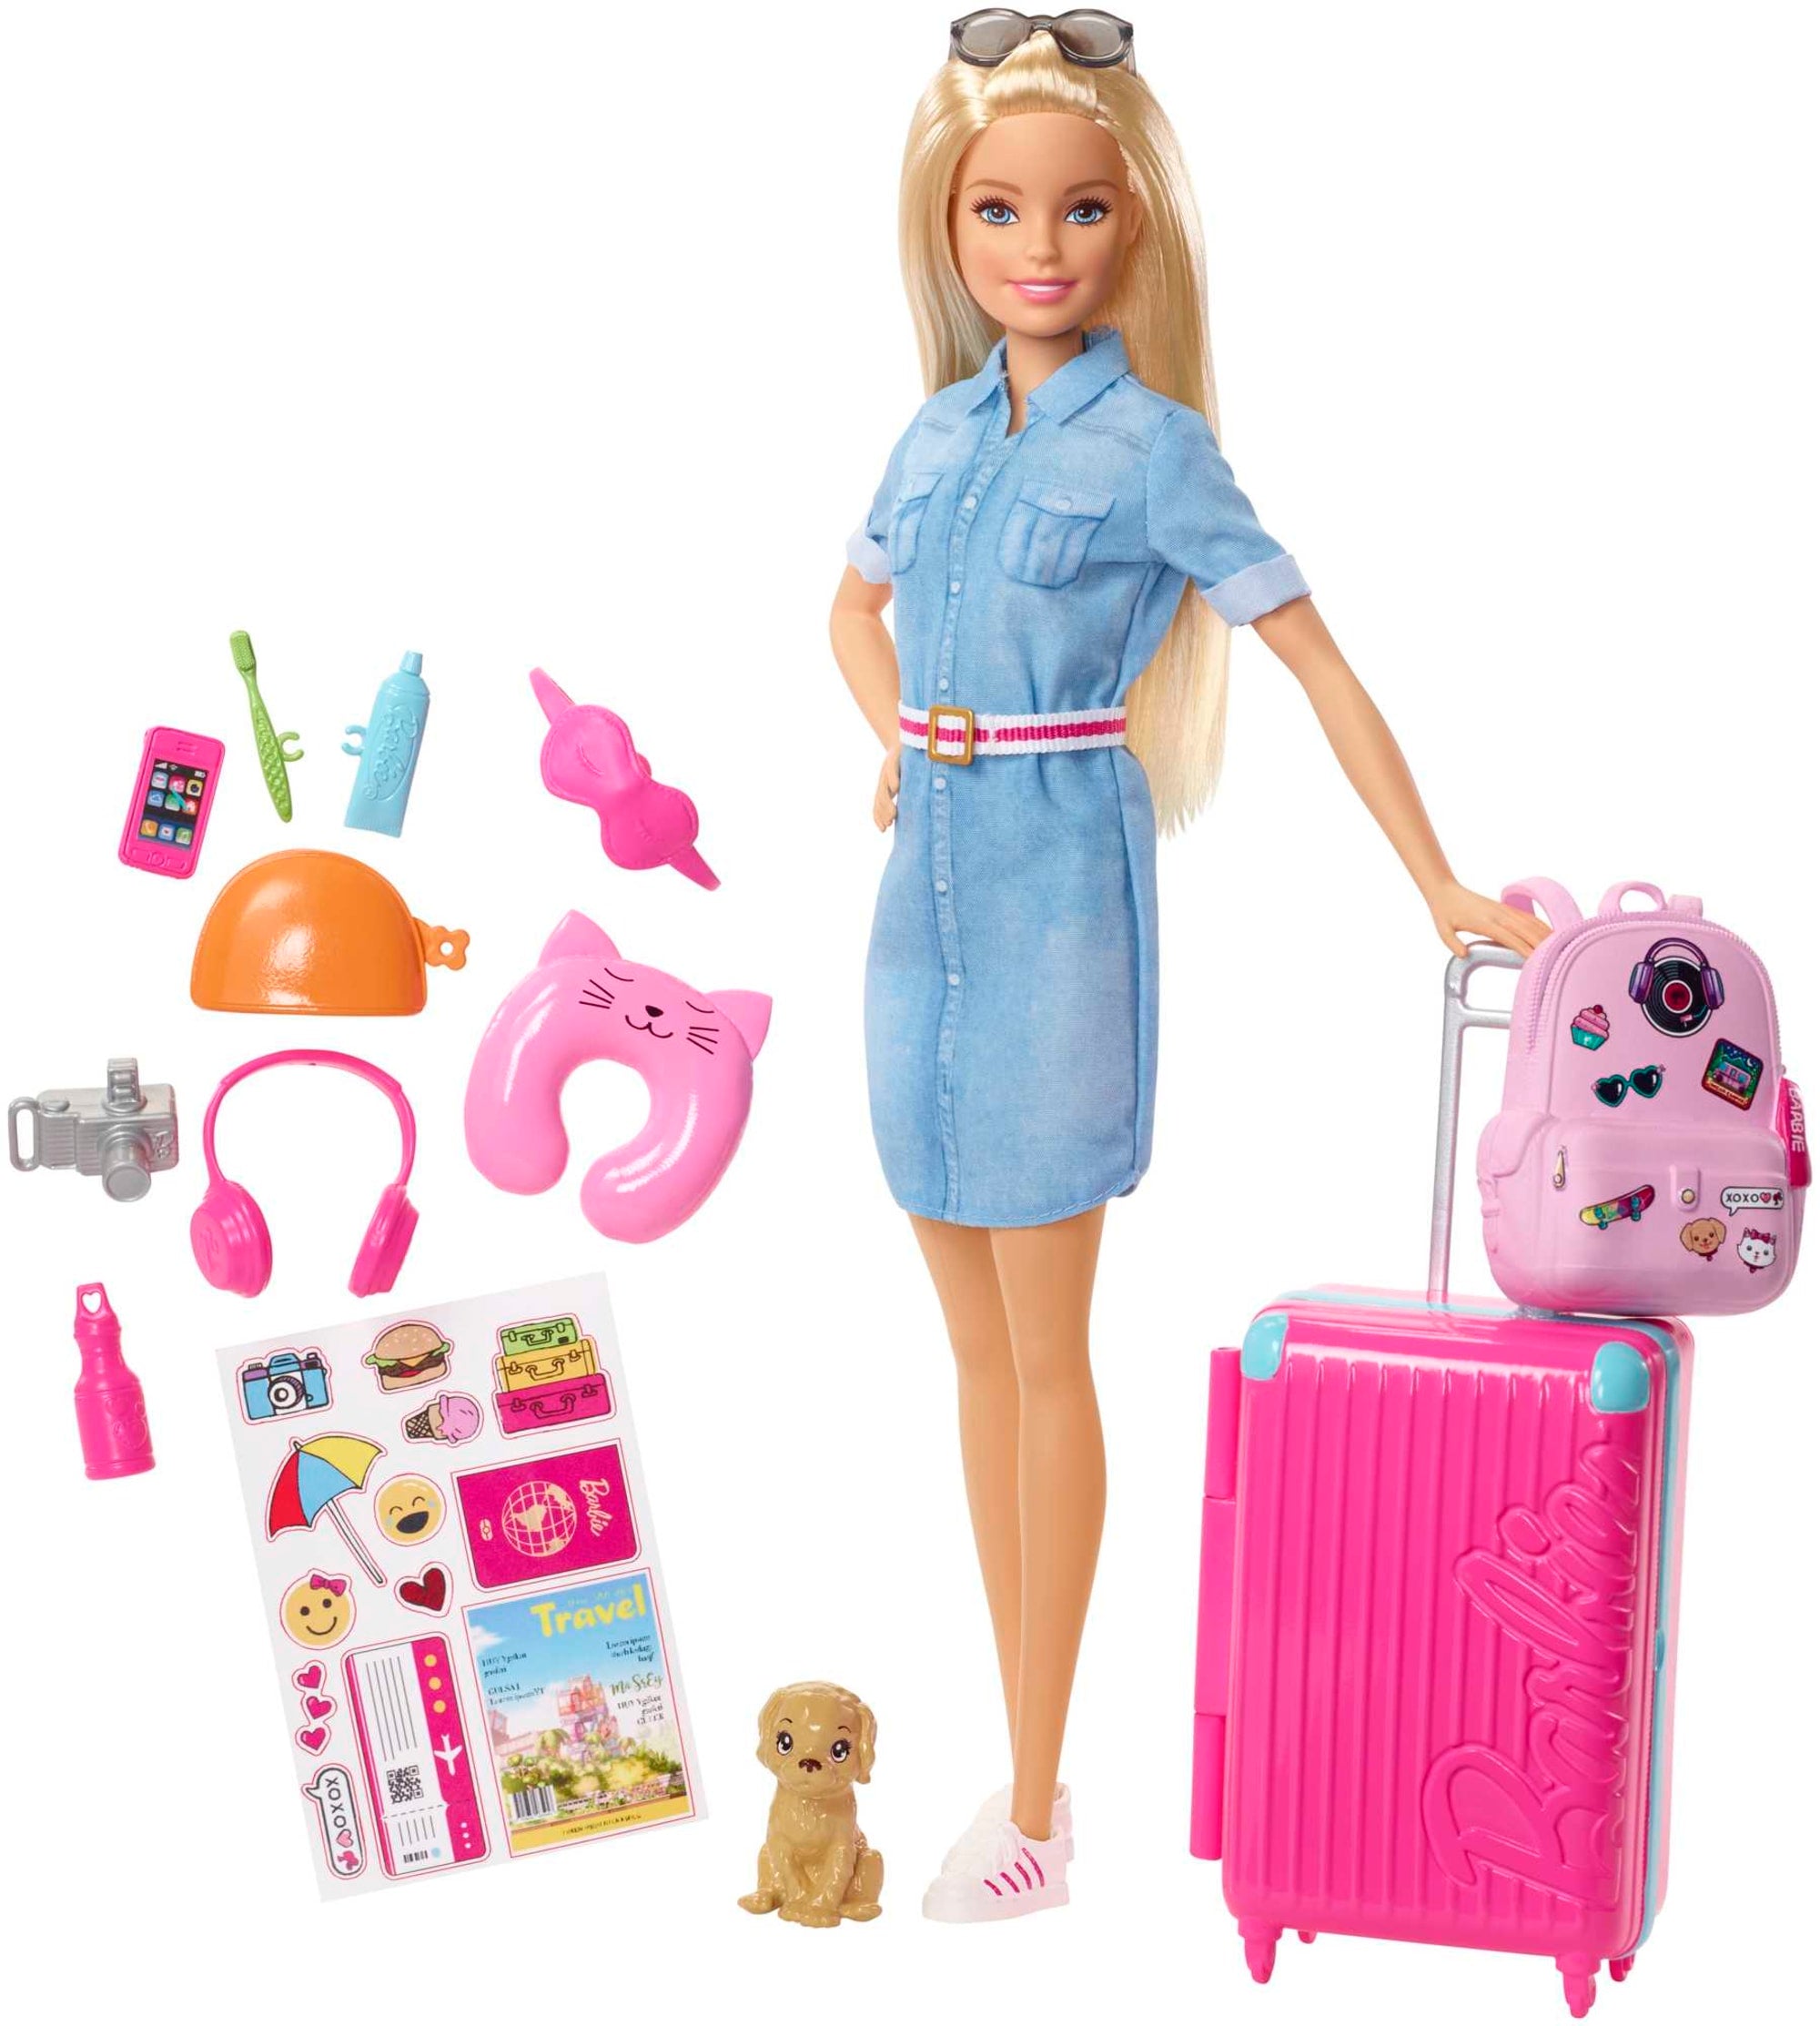 Barbie Color Reveal Slumber Party Fun Set, 50+ Surprises Including 2 Dolls,  3 Pets & 36 Accessories